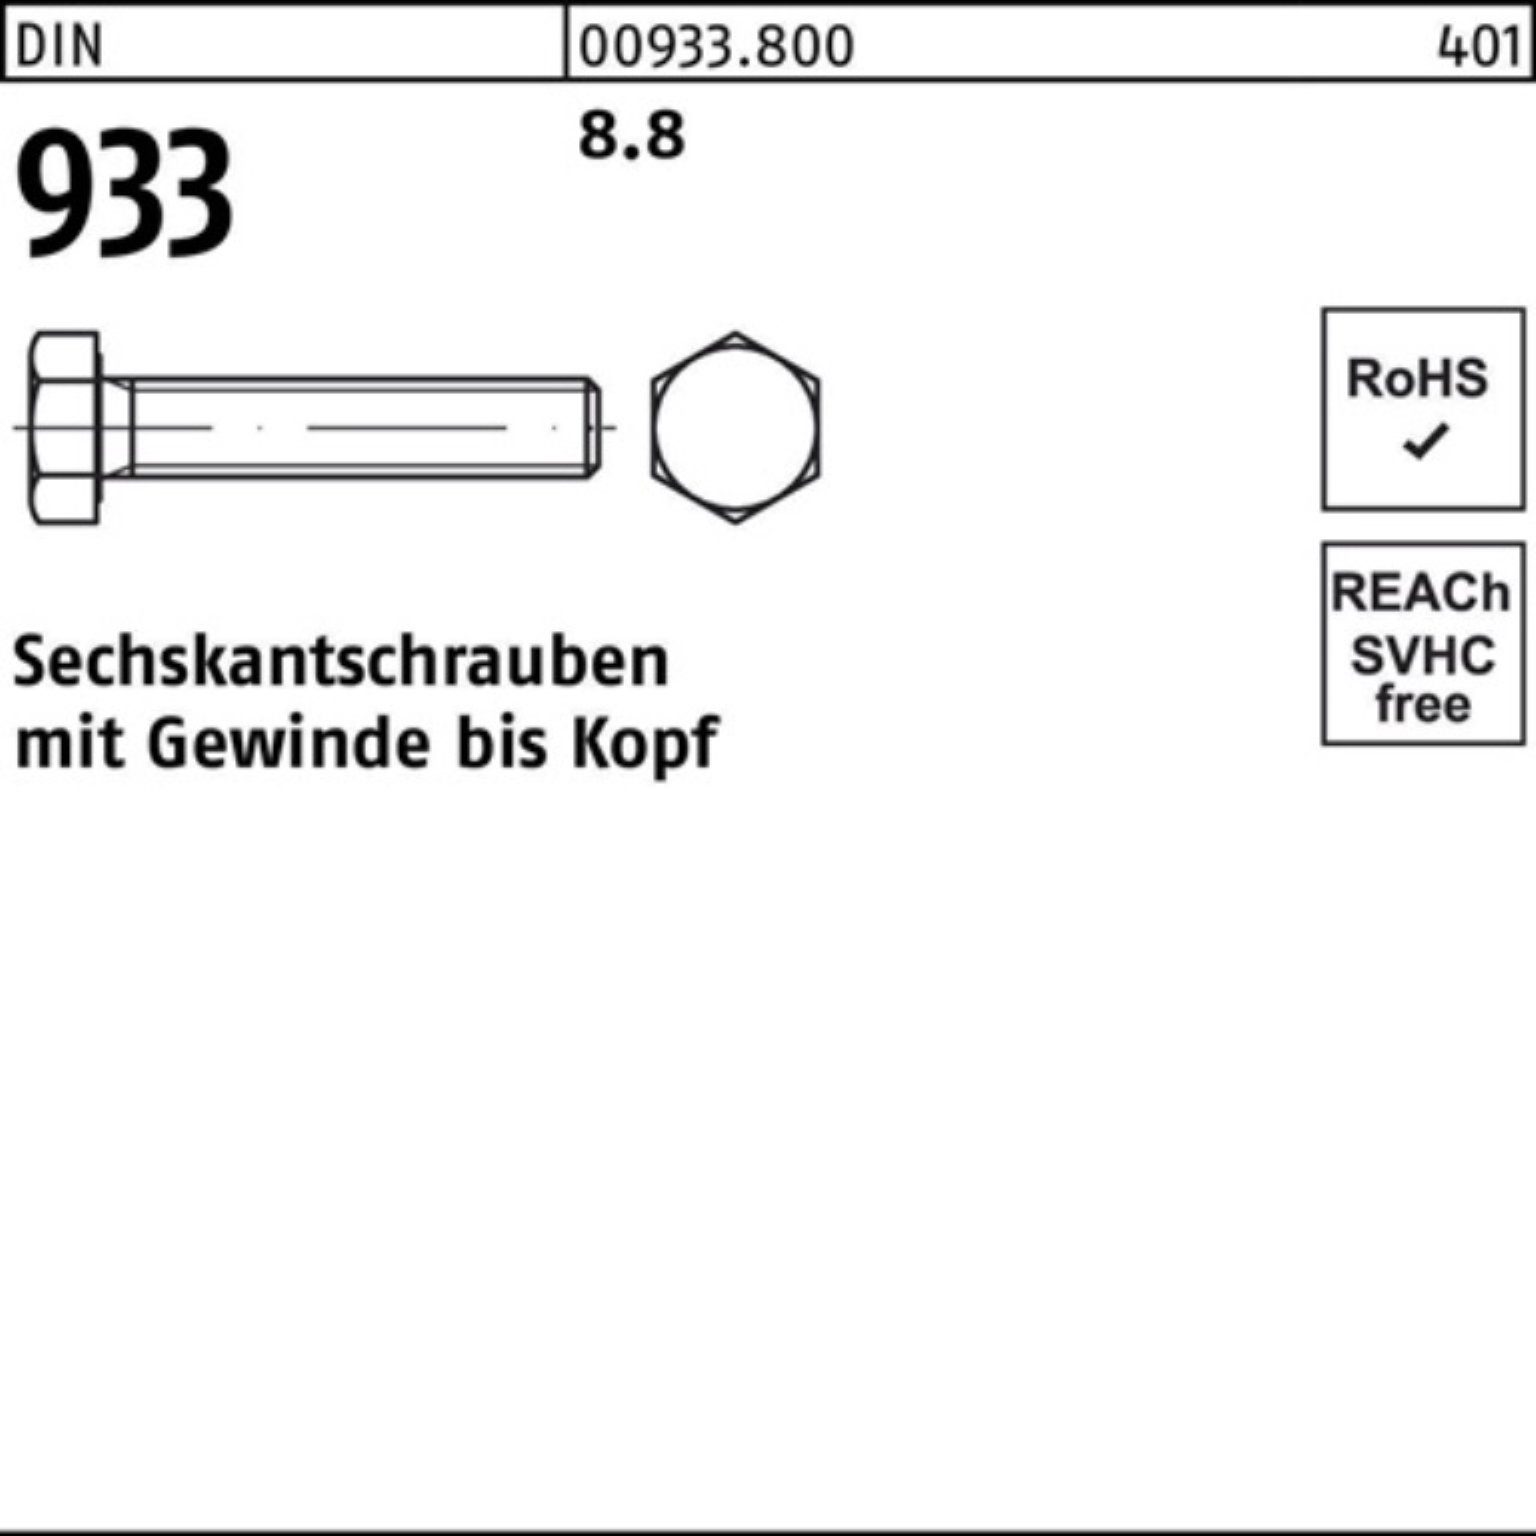 8.8 M48x 100er DIN VG 933 933 Stück 150 DIN 1 Sechskantschraube Pack Sechskantschraube Reyher